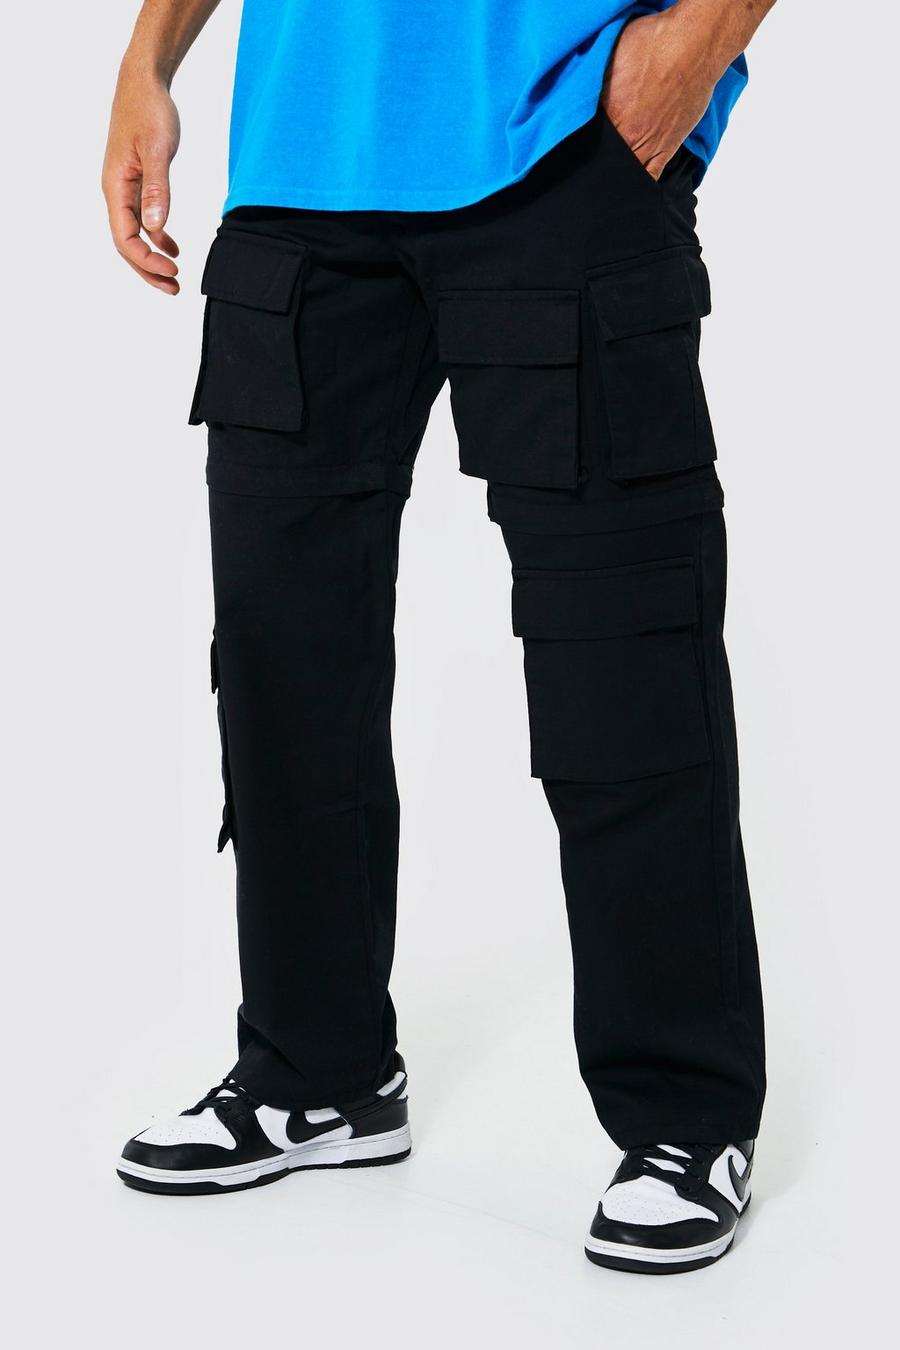 Pantaloni Cargo rilassati in nylon ripstop con gamba rimuovibile, Black nero